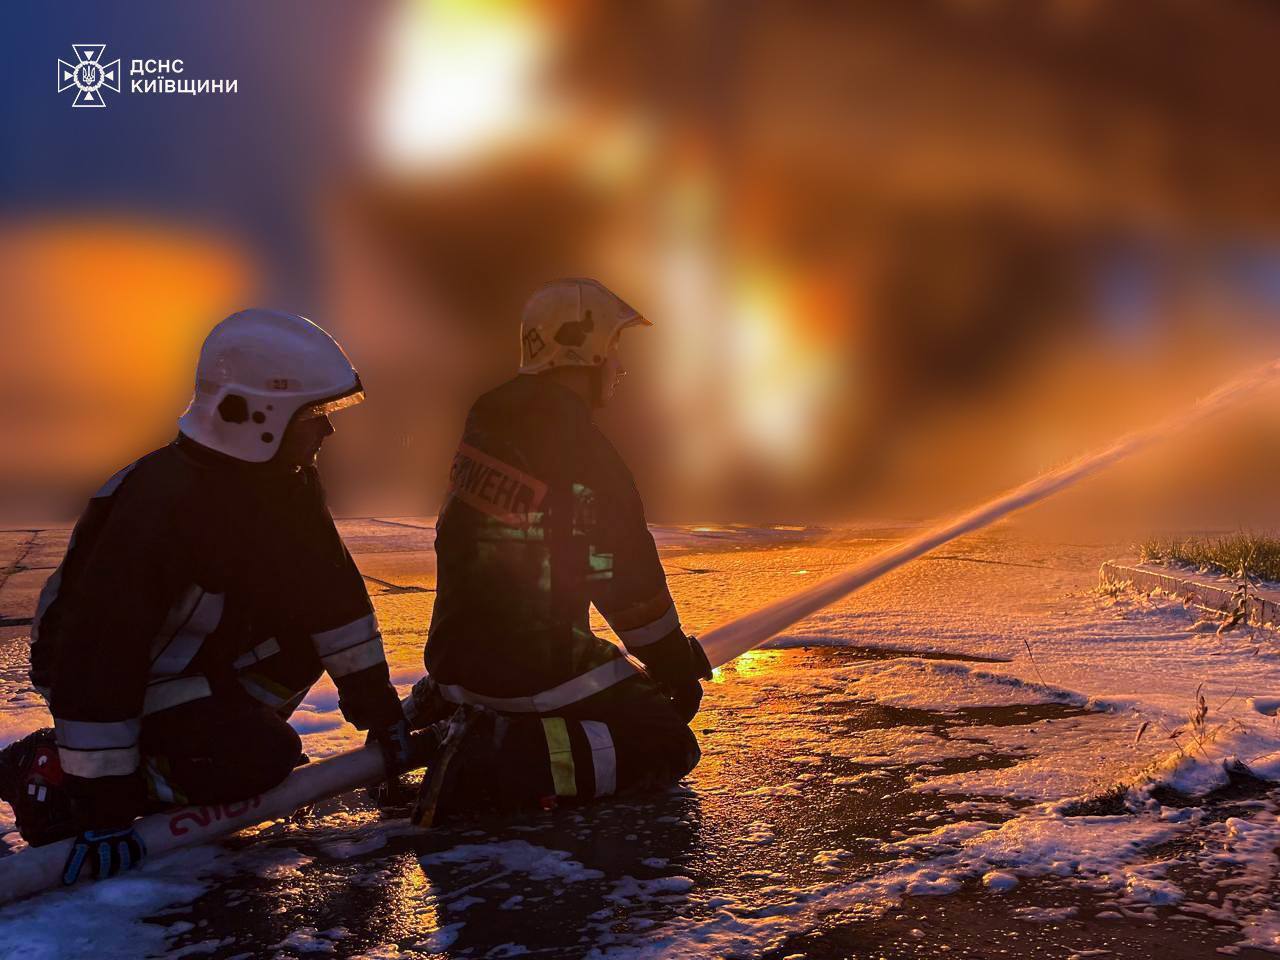 На Киевщине в результате падения обломков произошел пожар на промышленном объекте и складах, есть пострадавший